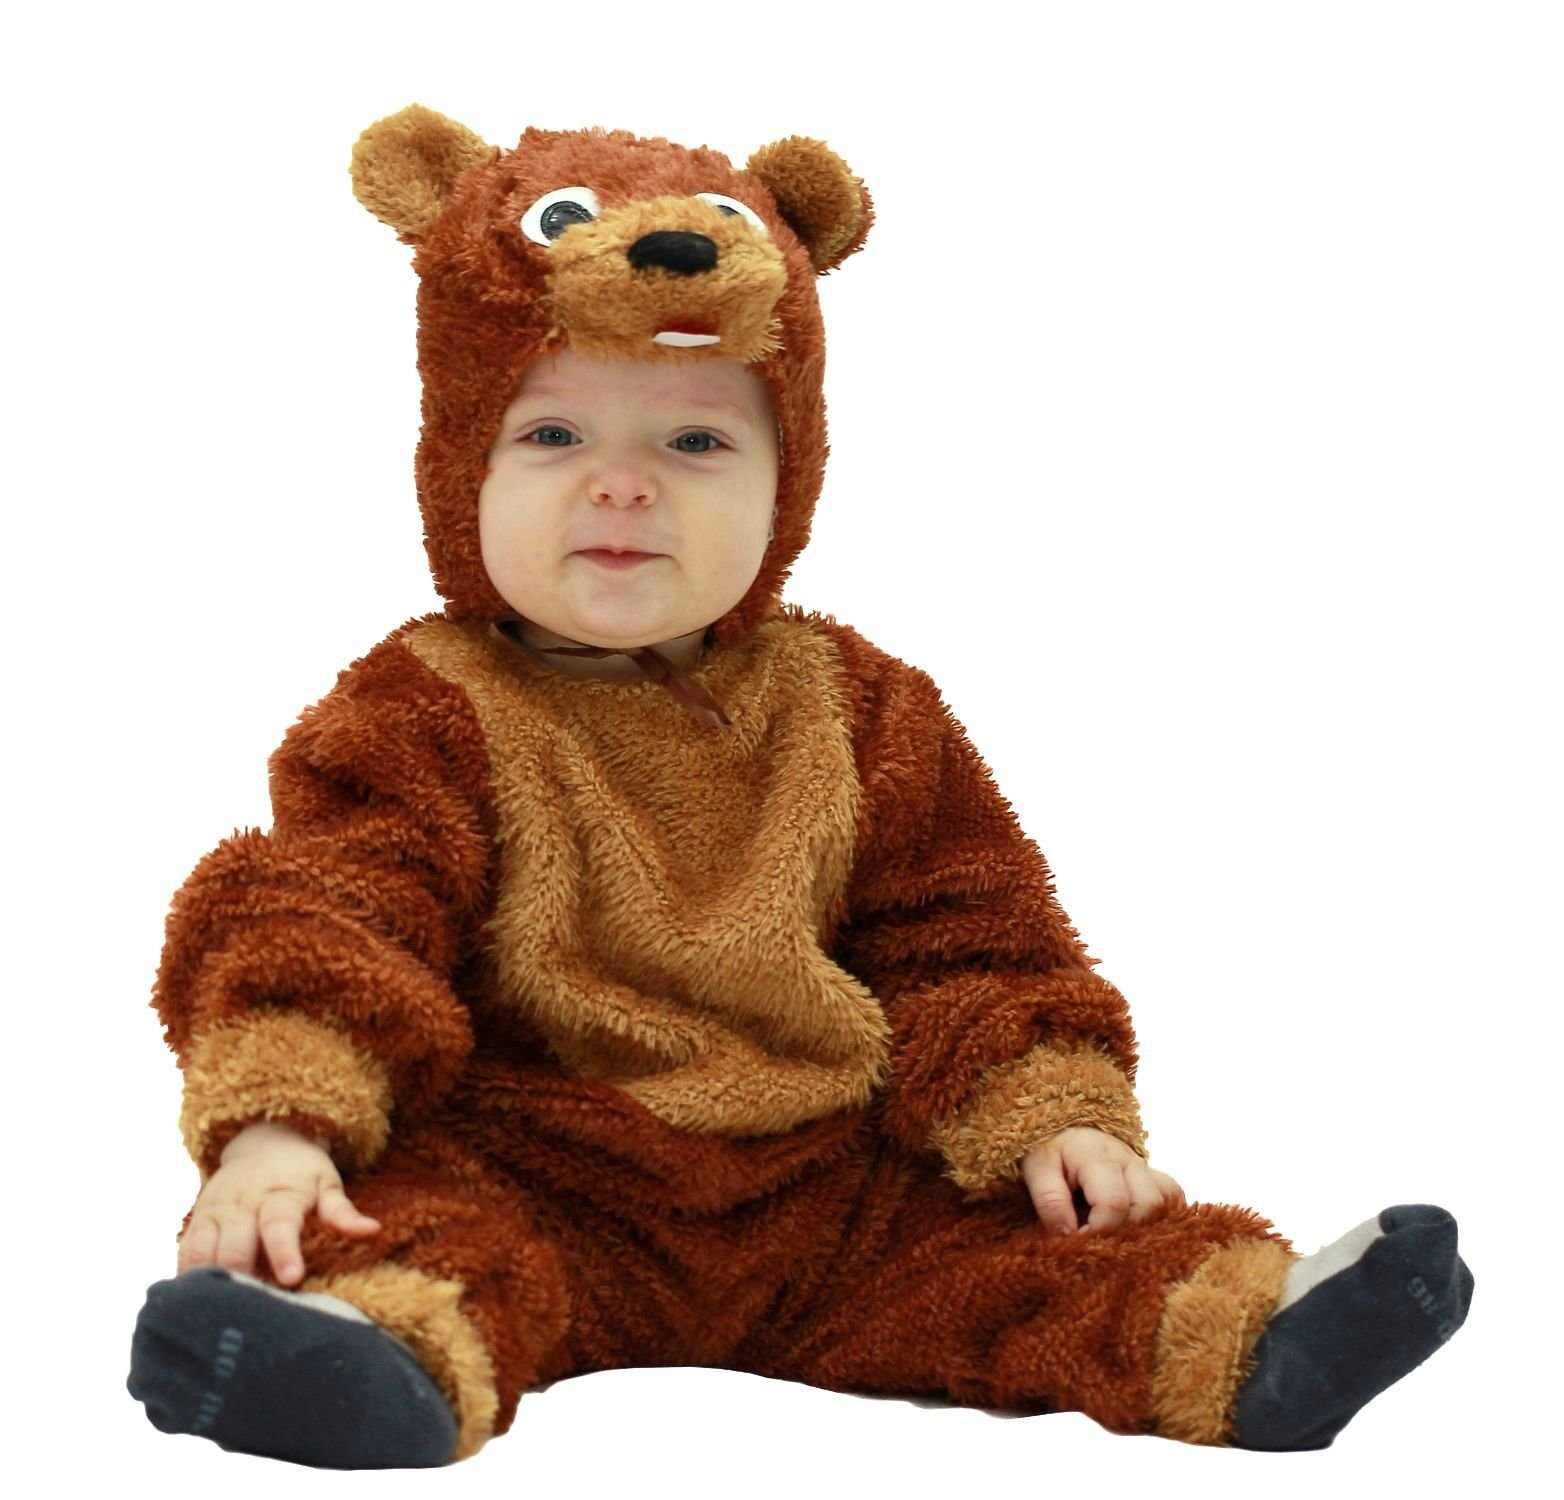 Костюм медвежонка для мальчика. Детский костюм медведя. Карнавальный костюм Медвежонок. Новогодний костюм медведя для мальчика.